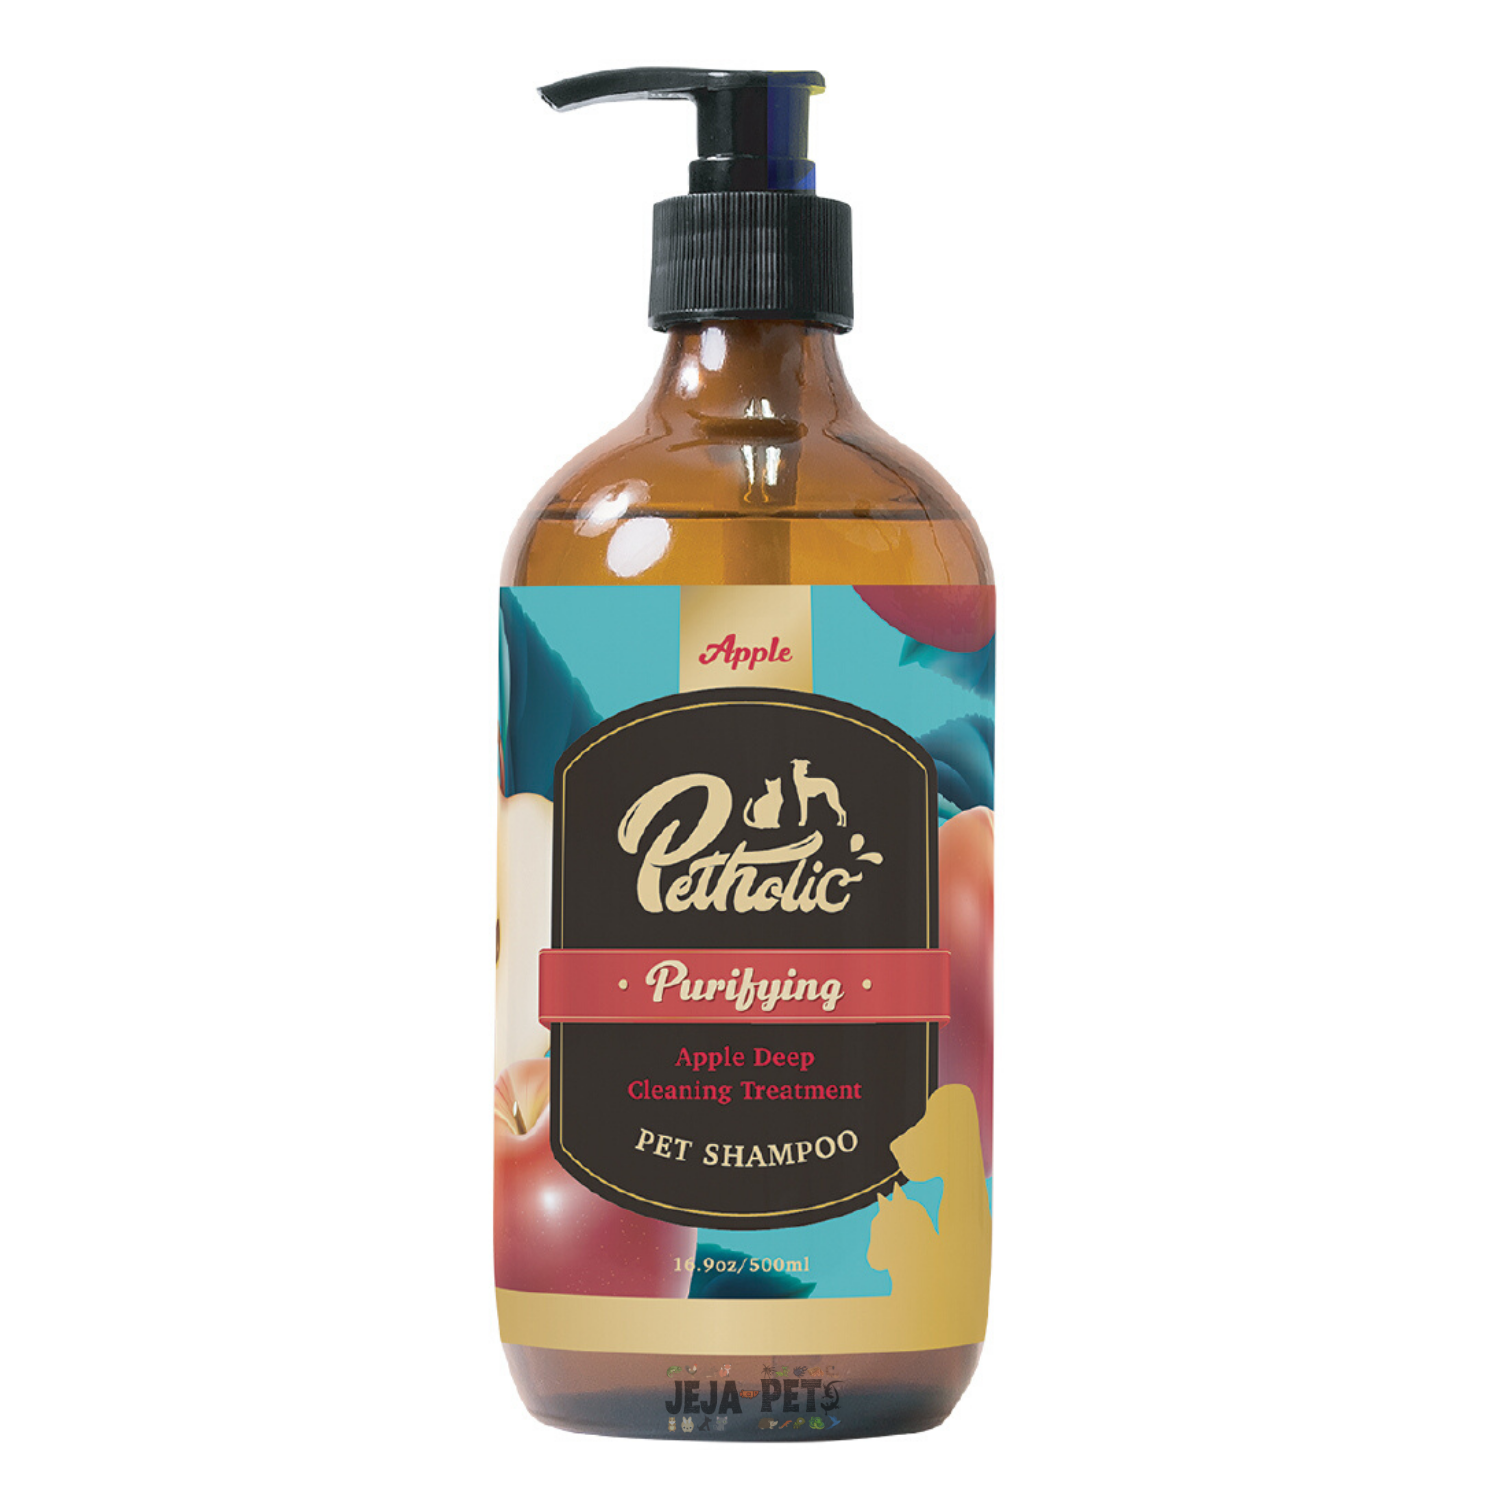 [PROMO: FREE PETHOLIC TOWEL] Petholic Shampoo and Conditioners